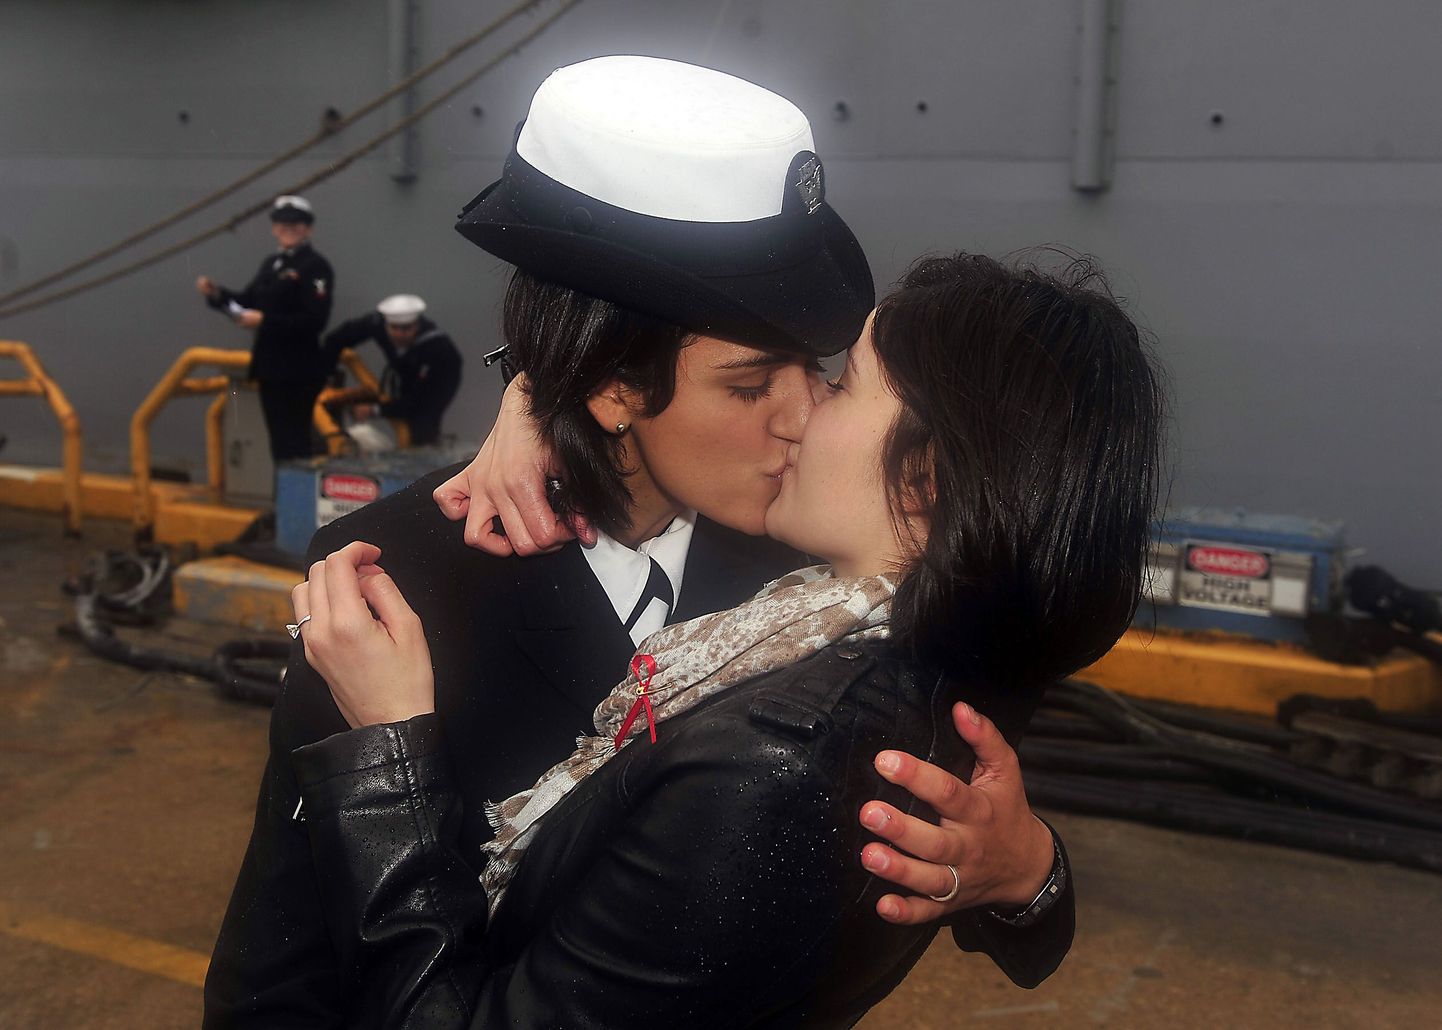 Marissa Gaeta (vasakul) suudlemas oma tüdruksõpra Citlalic Snelli